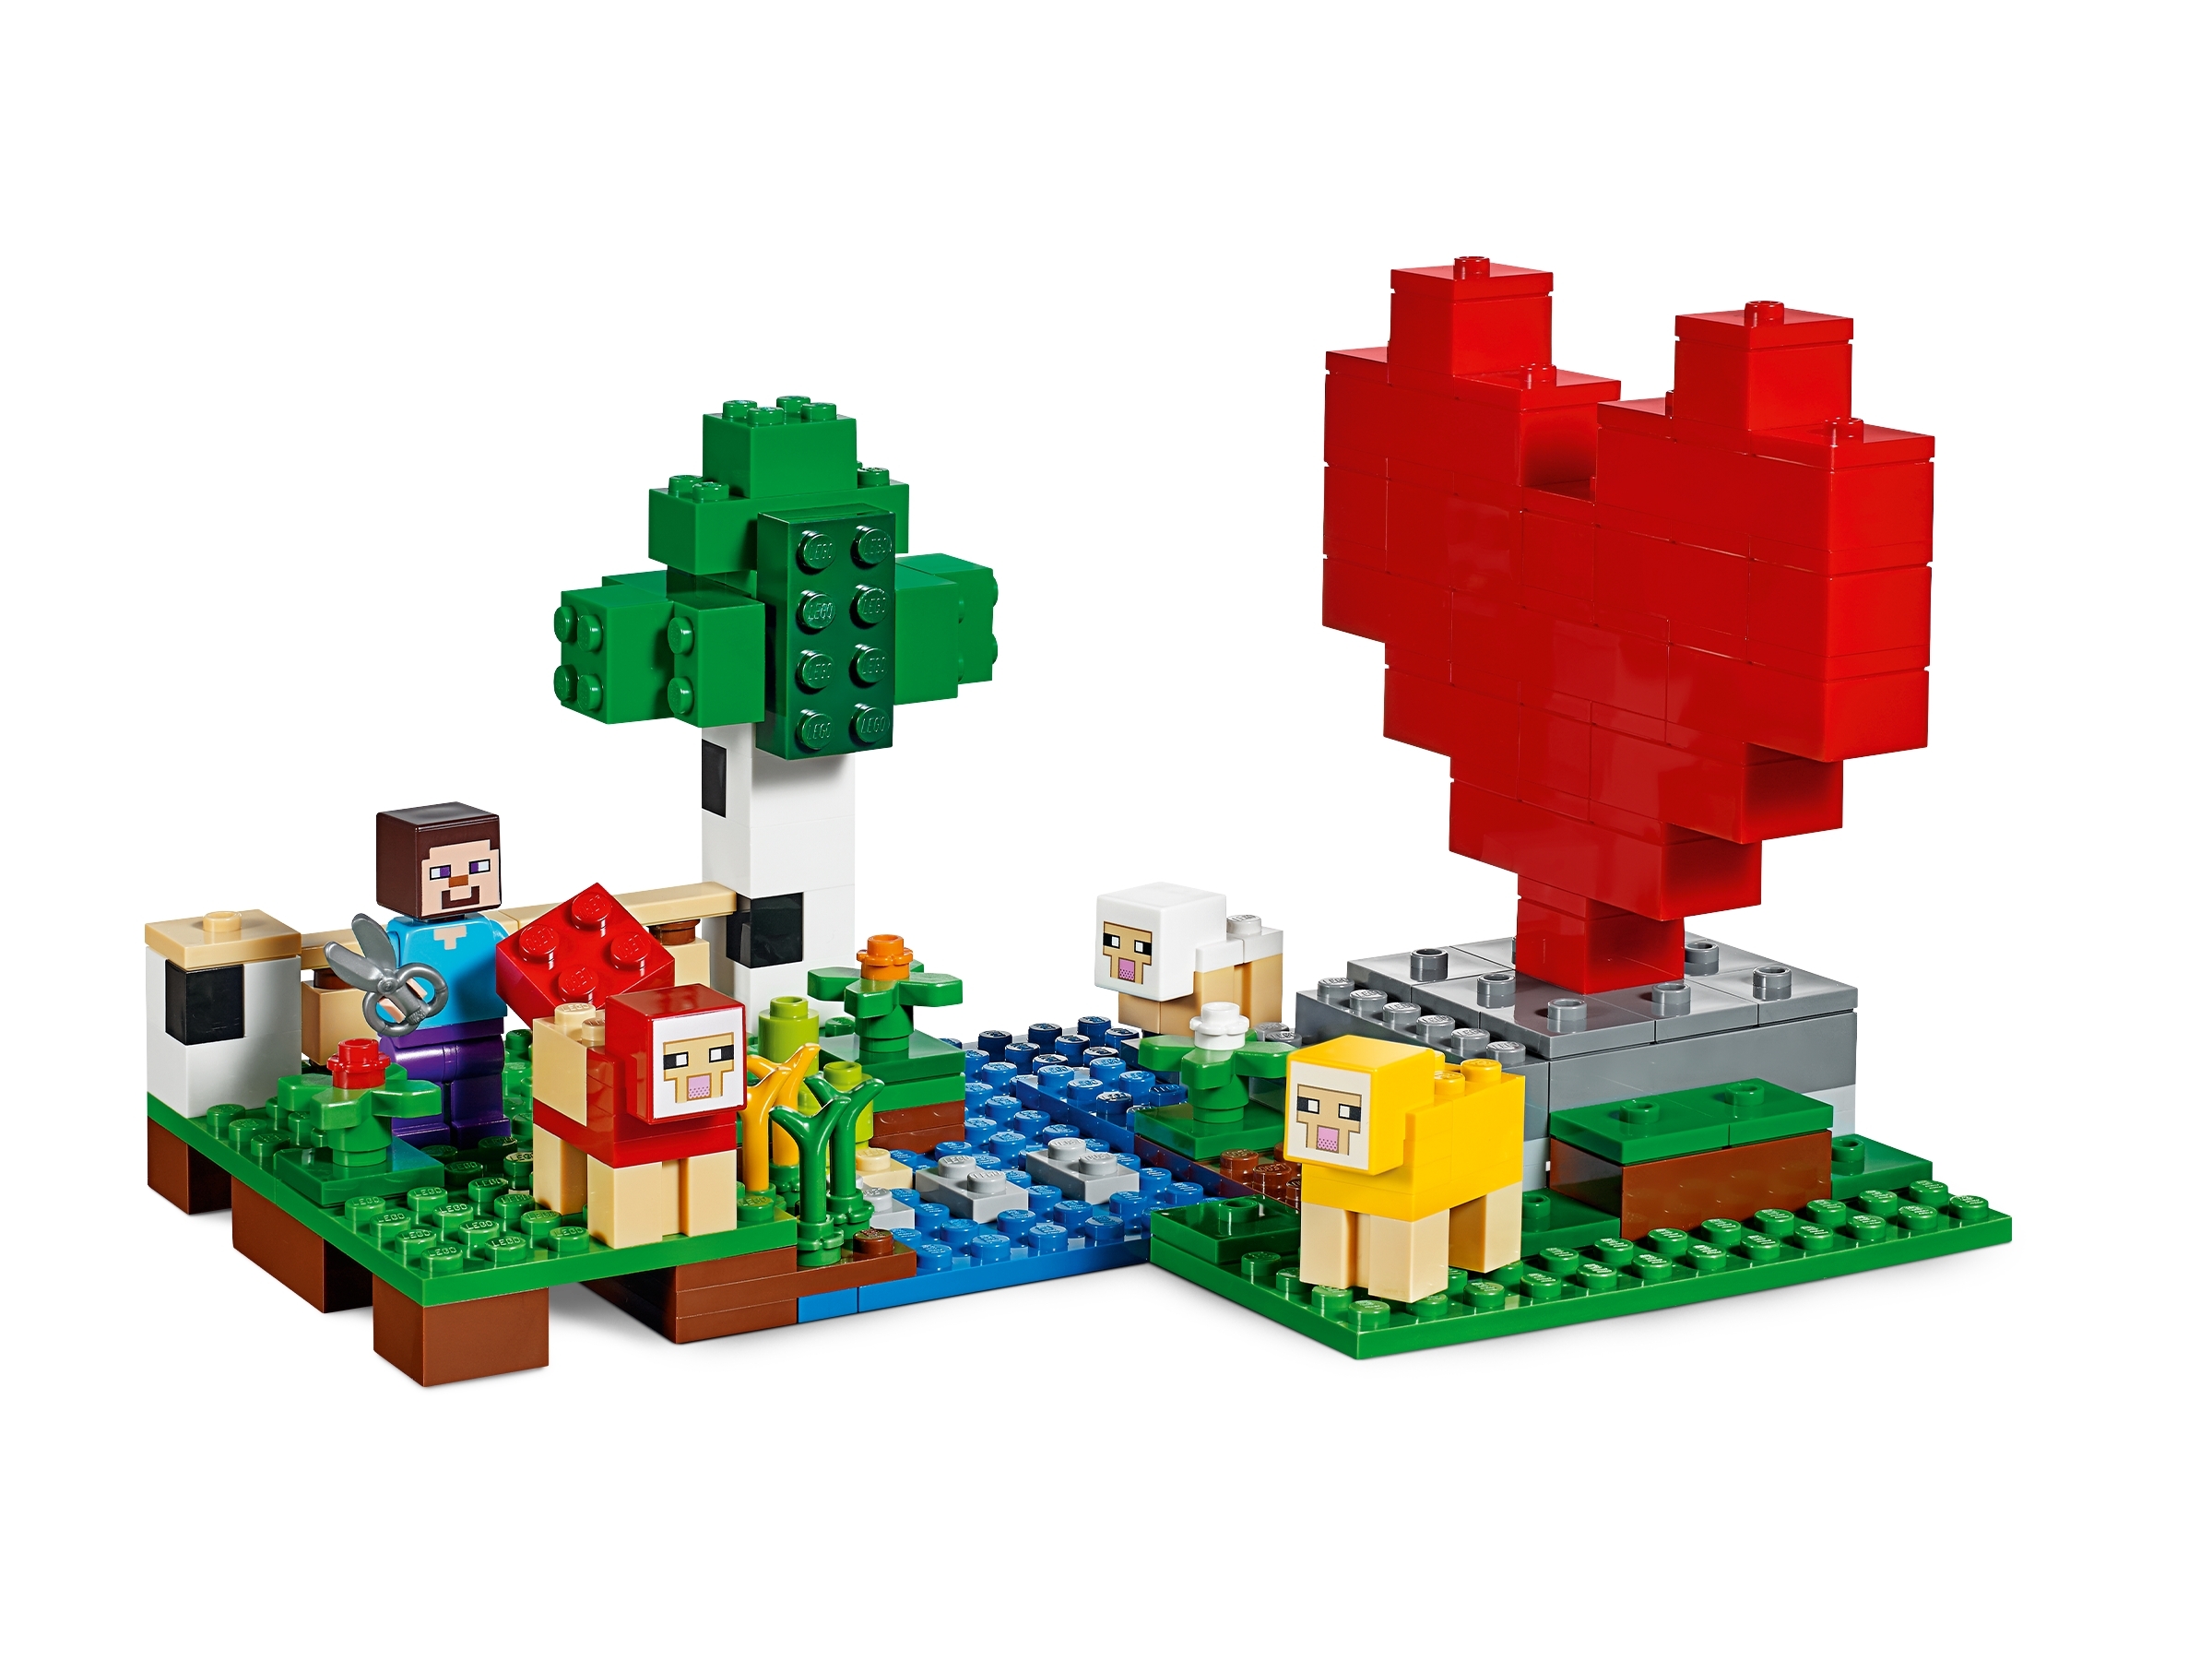 Roblox, Lego, Lego, Lego & Minecraft Witch. : r/toys